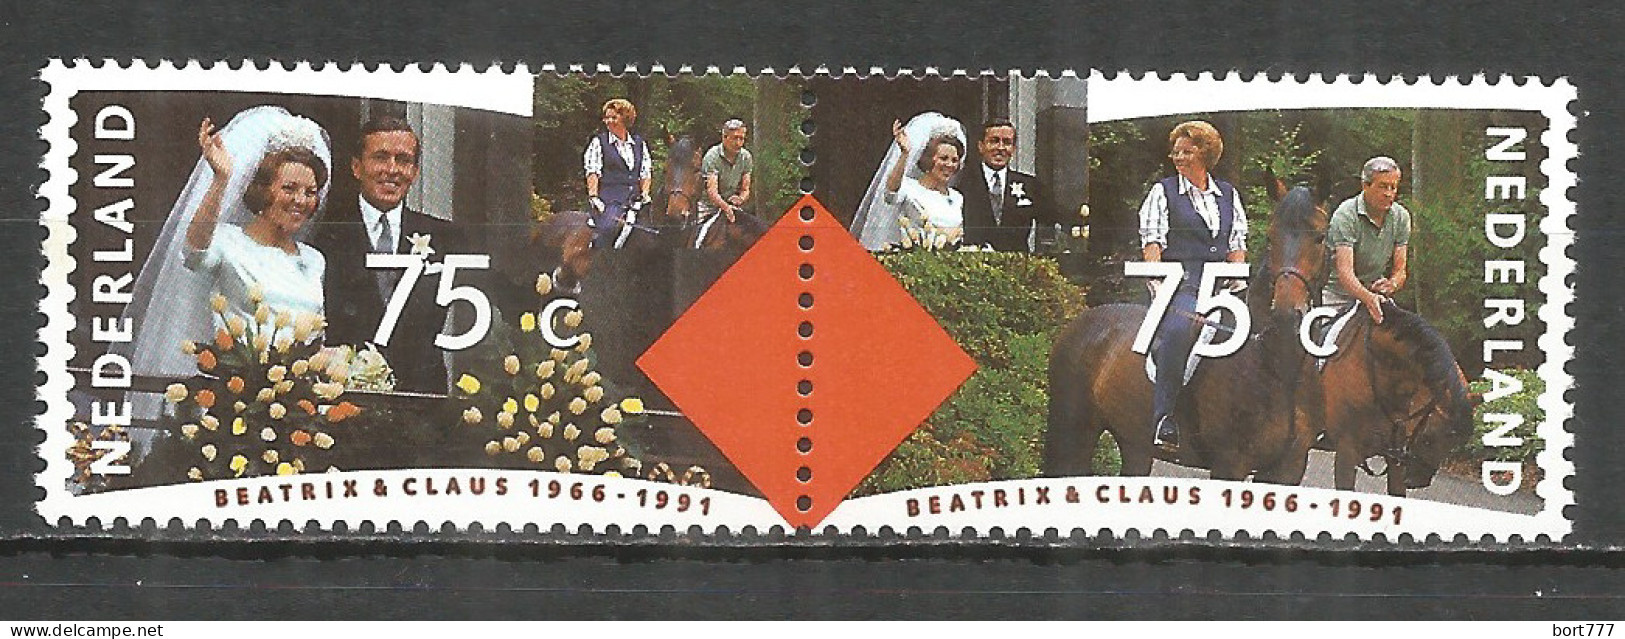 NETHERLANDS 1991 Year , Mint Stamps MNH (**)  - Ungebraucht